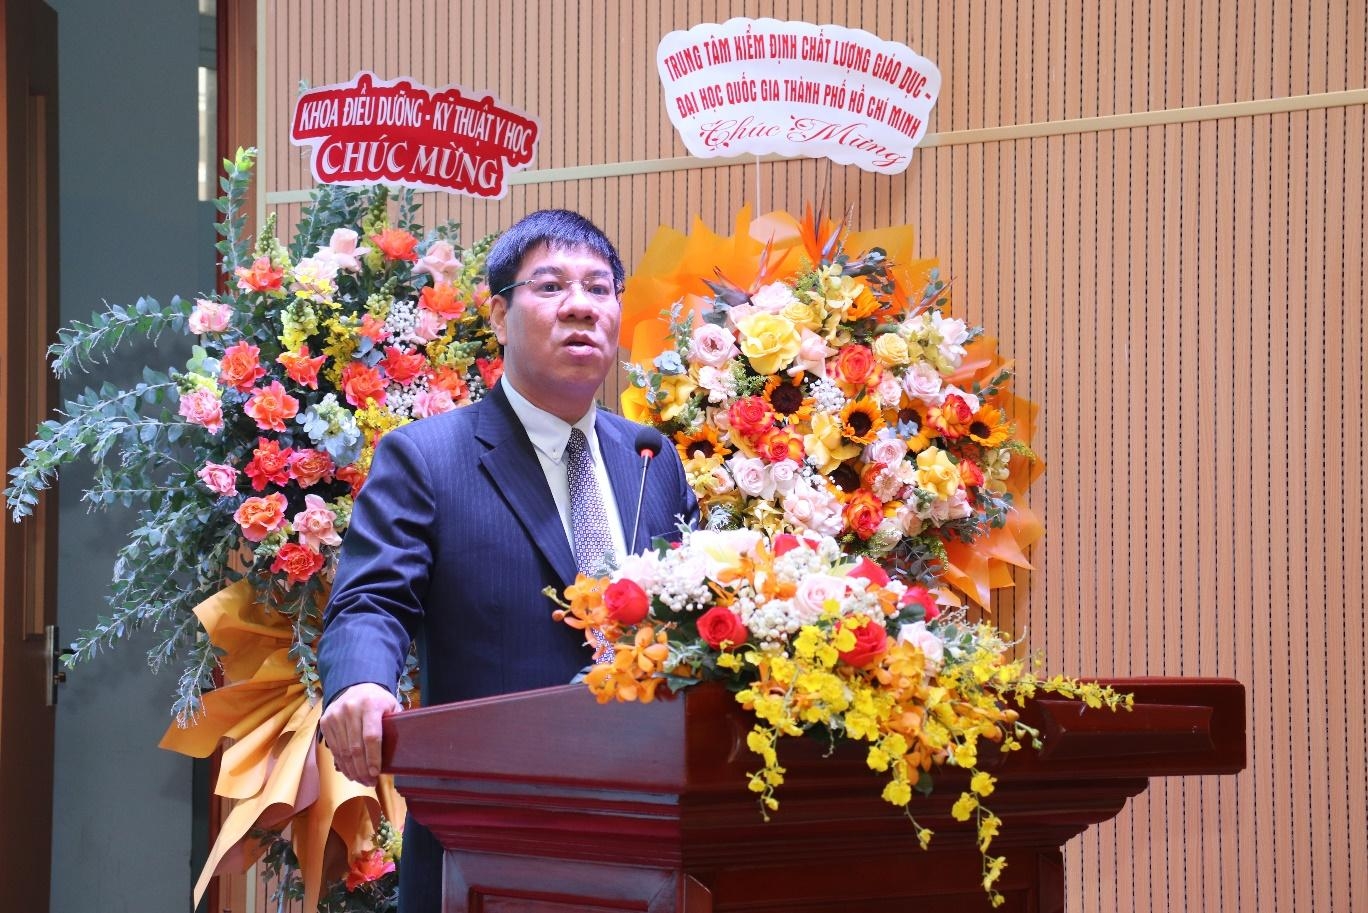 Đại học Y dược Thành phố Hồ Chí Minh đạt chứng nhận kiểm định cơ sở giáo dục chu kỳ 2